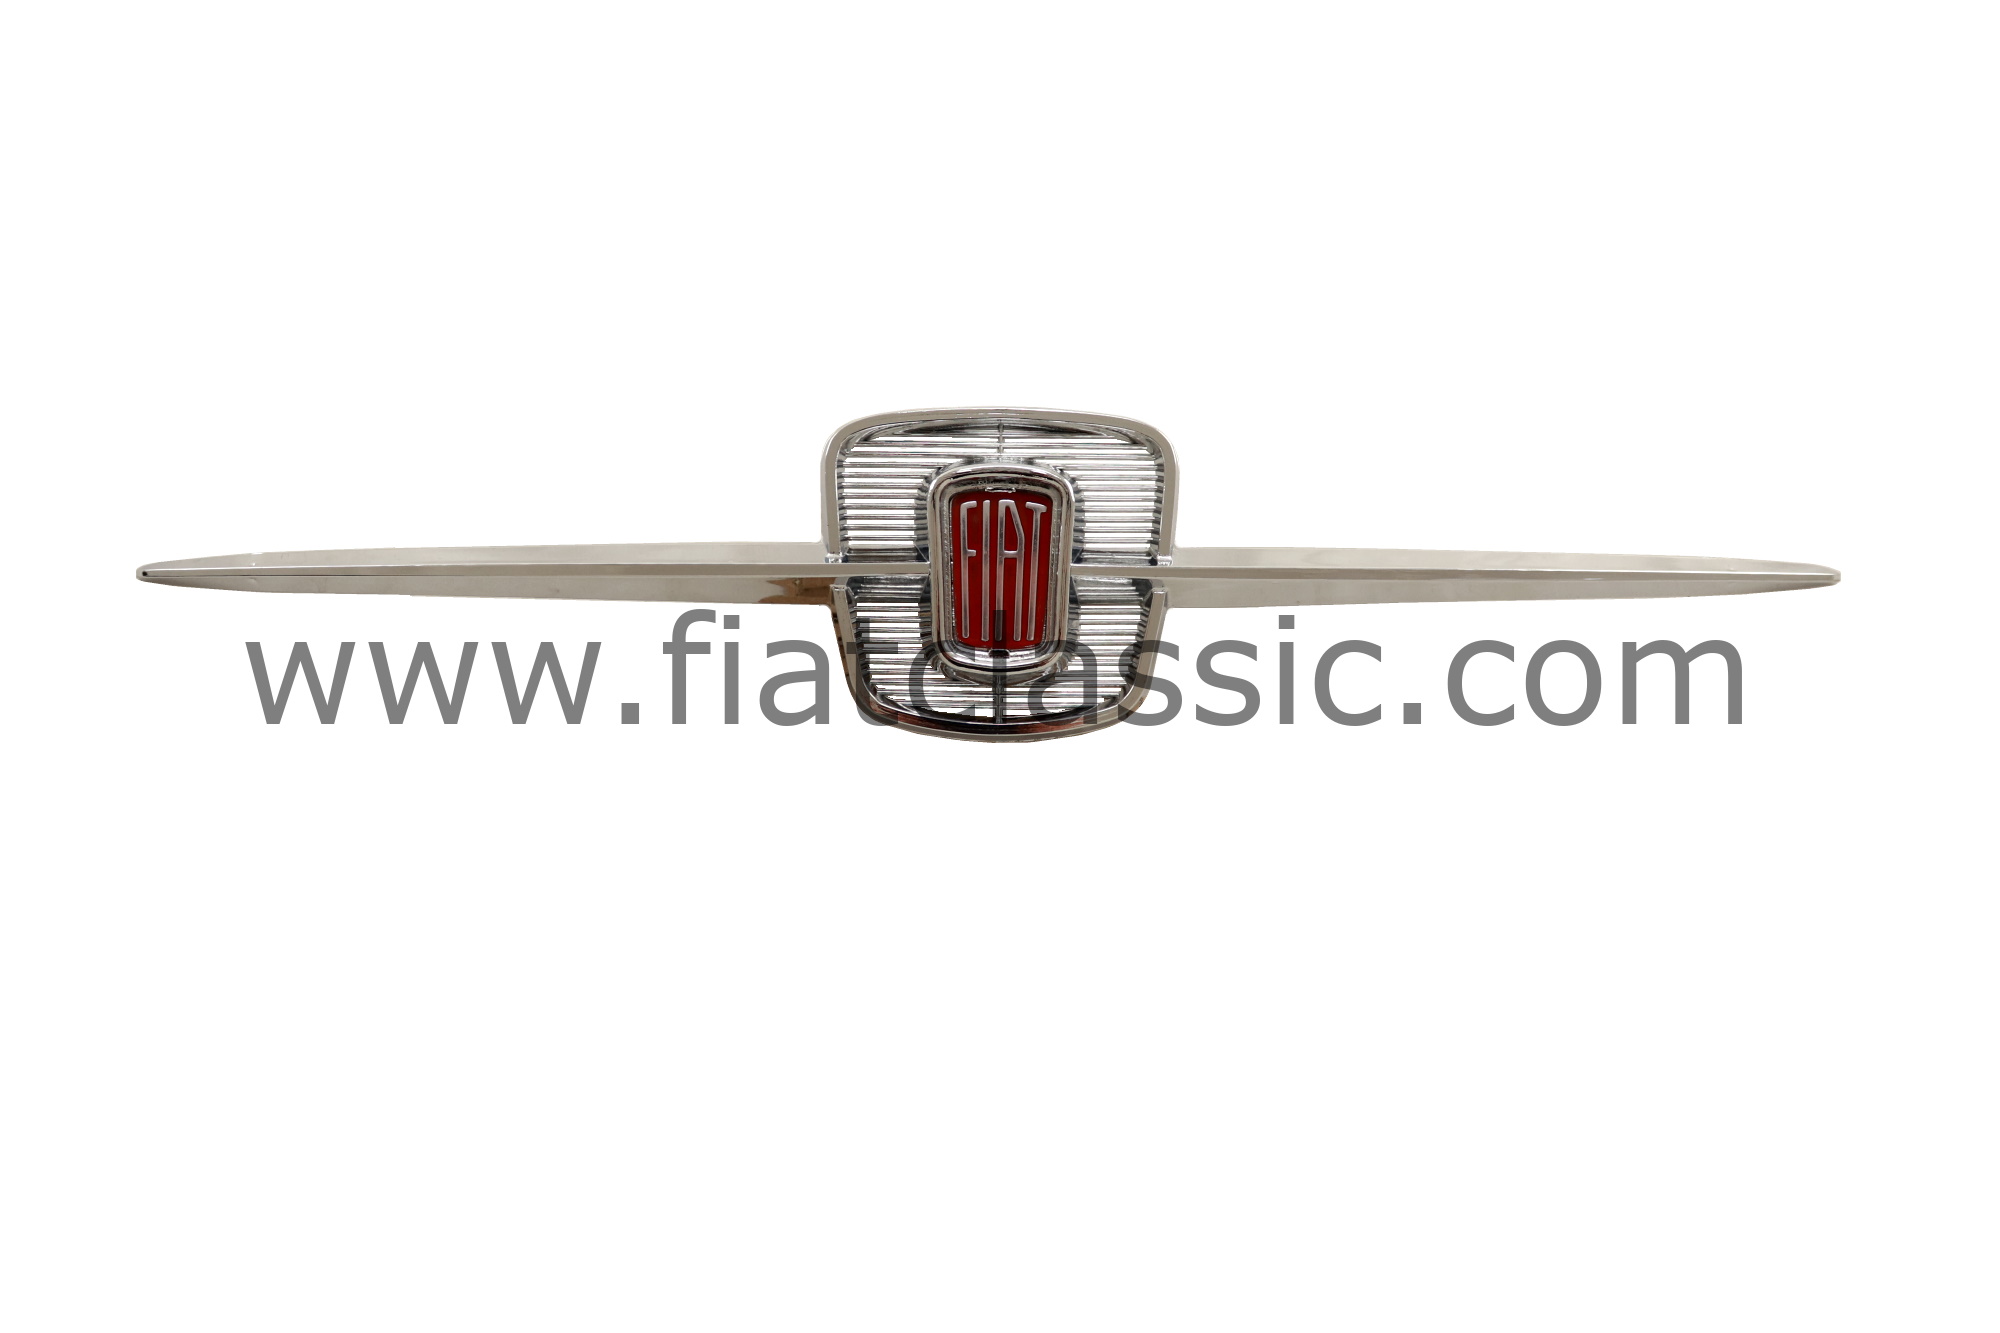 Fiat 600 600D Multipla Front Metal Emblem Stemma Genuine NOS